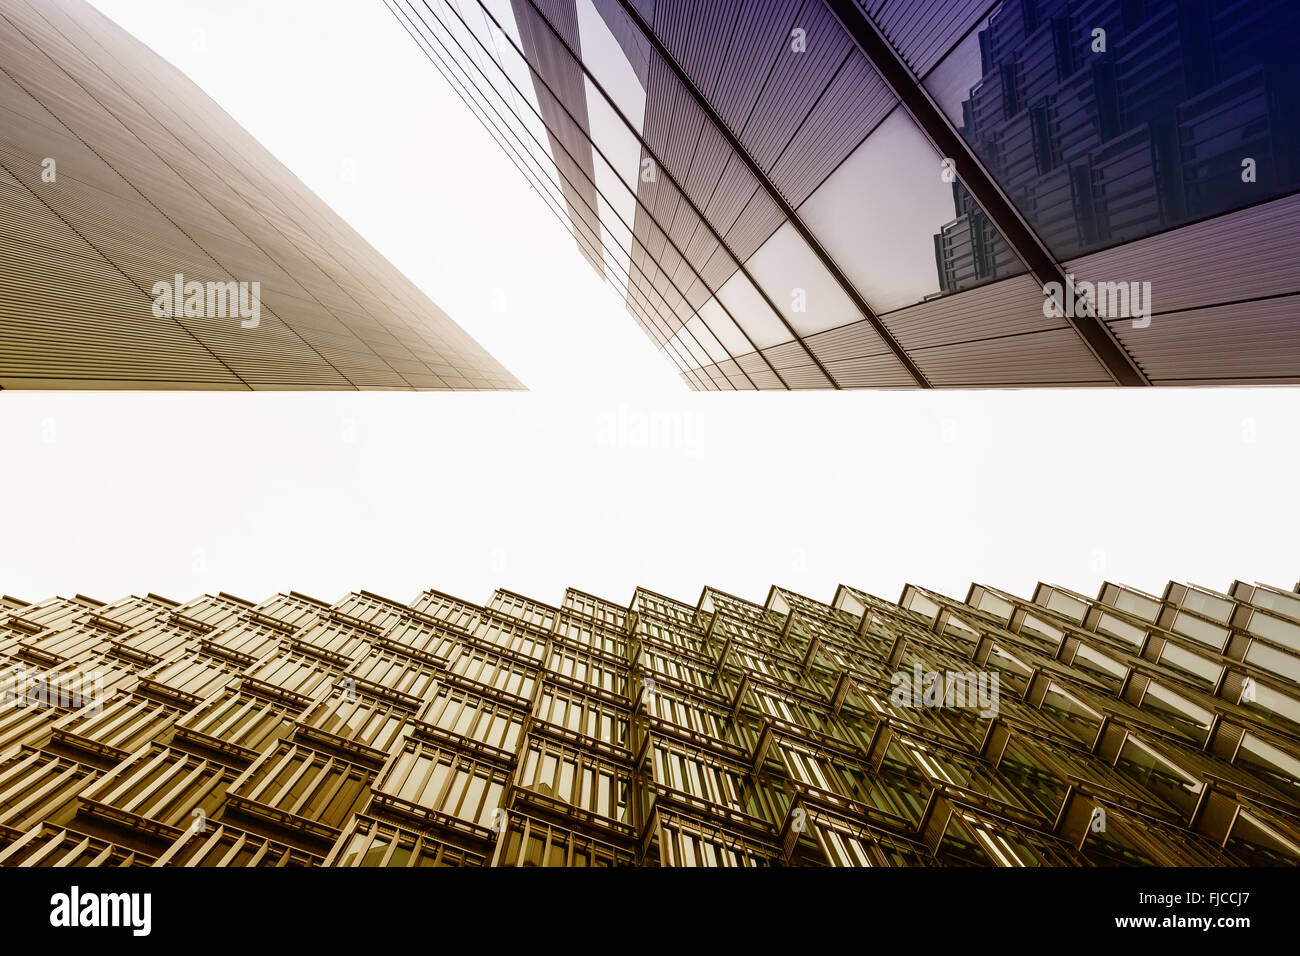 Una foto a color buscando capturar tres edificios diferentes en un ángulo con holirzontal Foto de stock